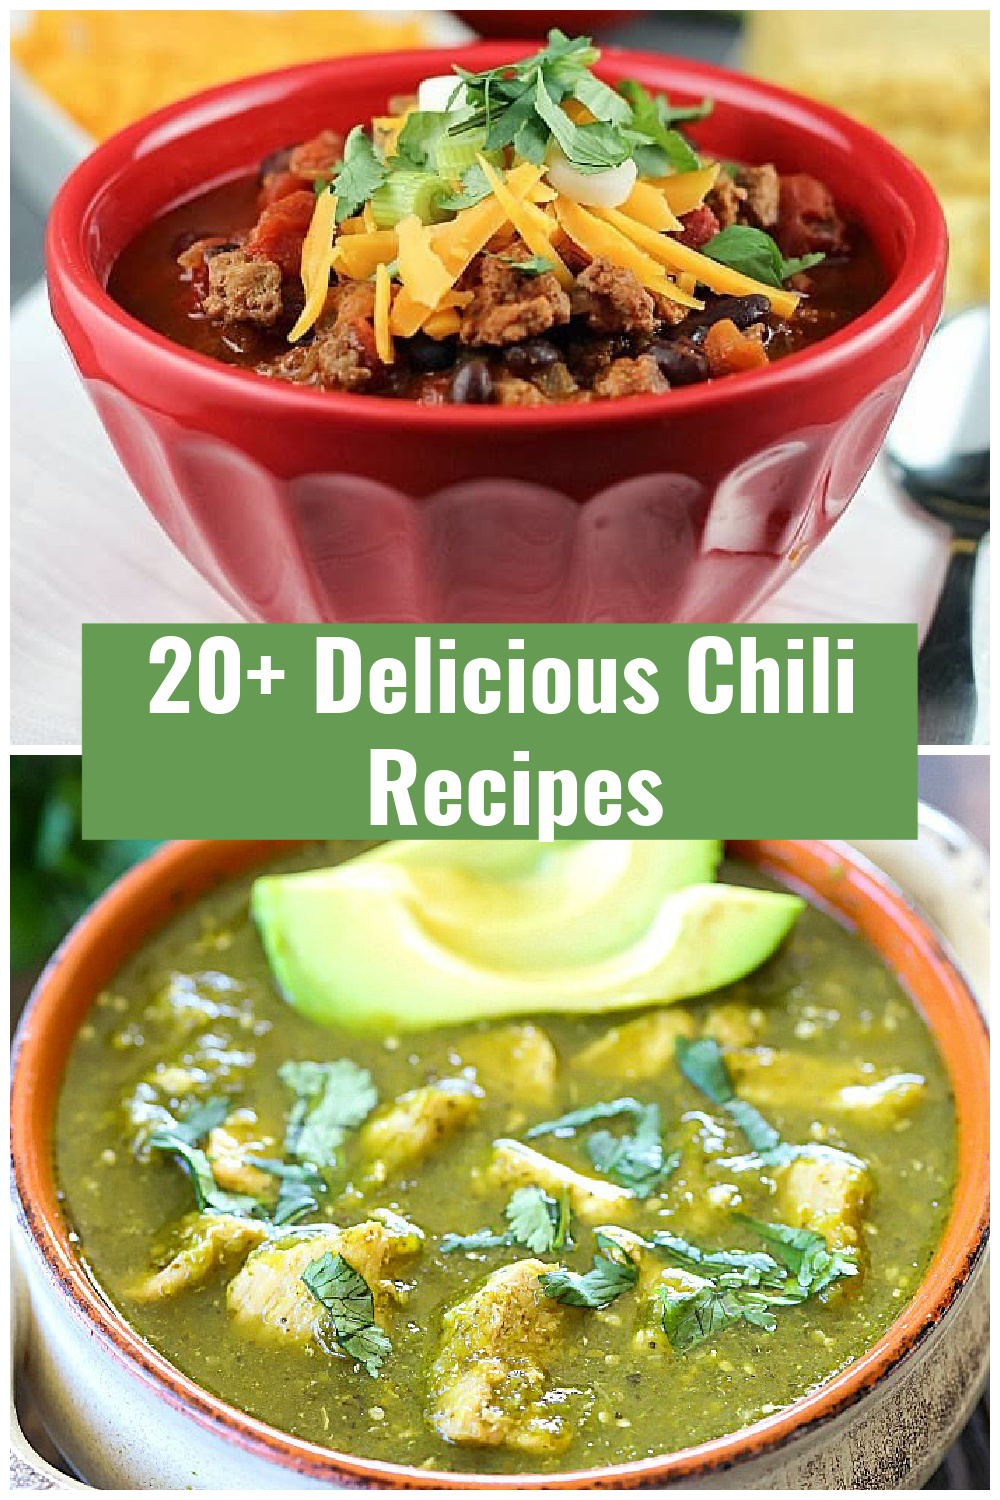   Ez az évszak!  Ideje egy hatalmas tál chilivel!  Íme, több mint 20 chili recept, amelyet el kell készítened ebben a szezonban.  Tekintse meg ezt a 20+ Chili Round Up-ot, ahol remek ötleteket talál arról, hogy milyen chilirecepteket érdemes kipróbálnia!  #chili #körkép #vacsora #vacsoraötletek #receptek a @jennikolauson keresztül